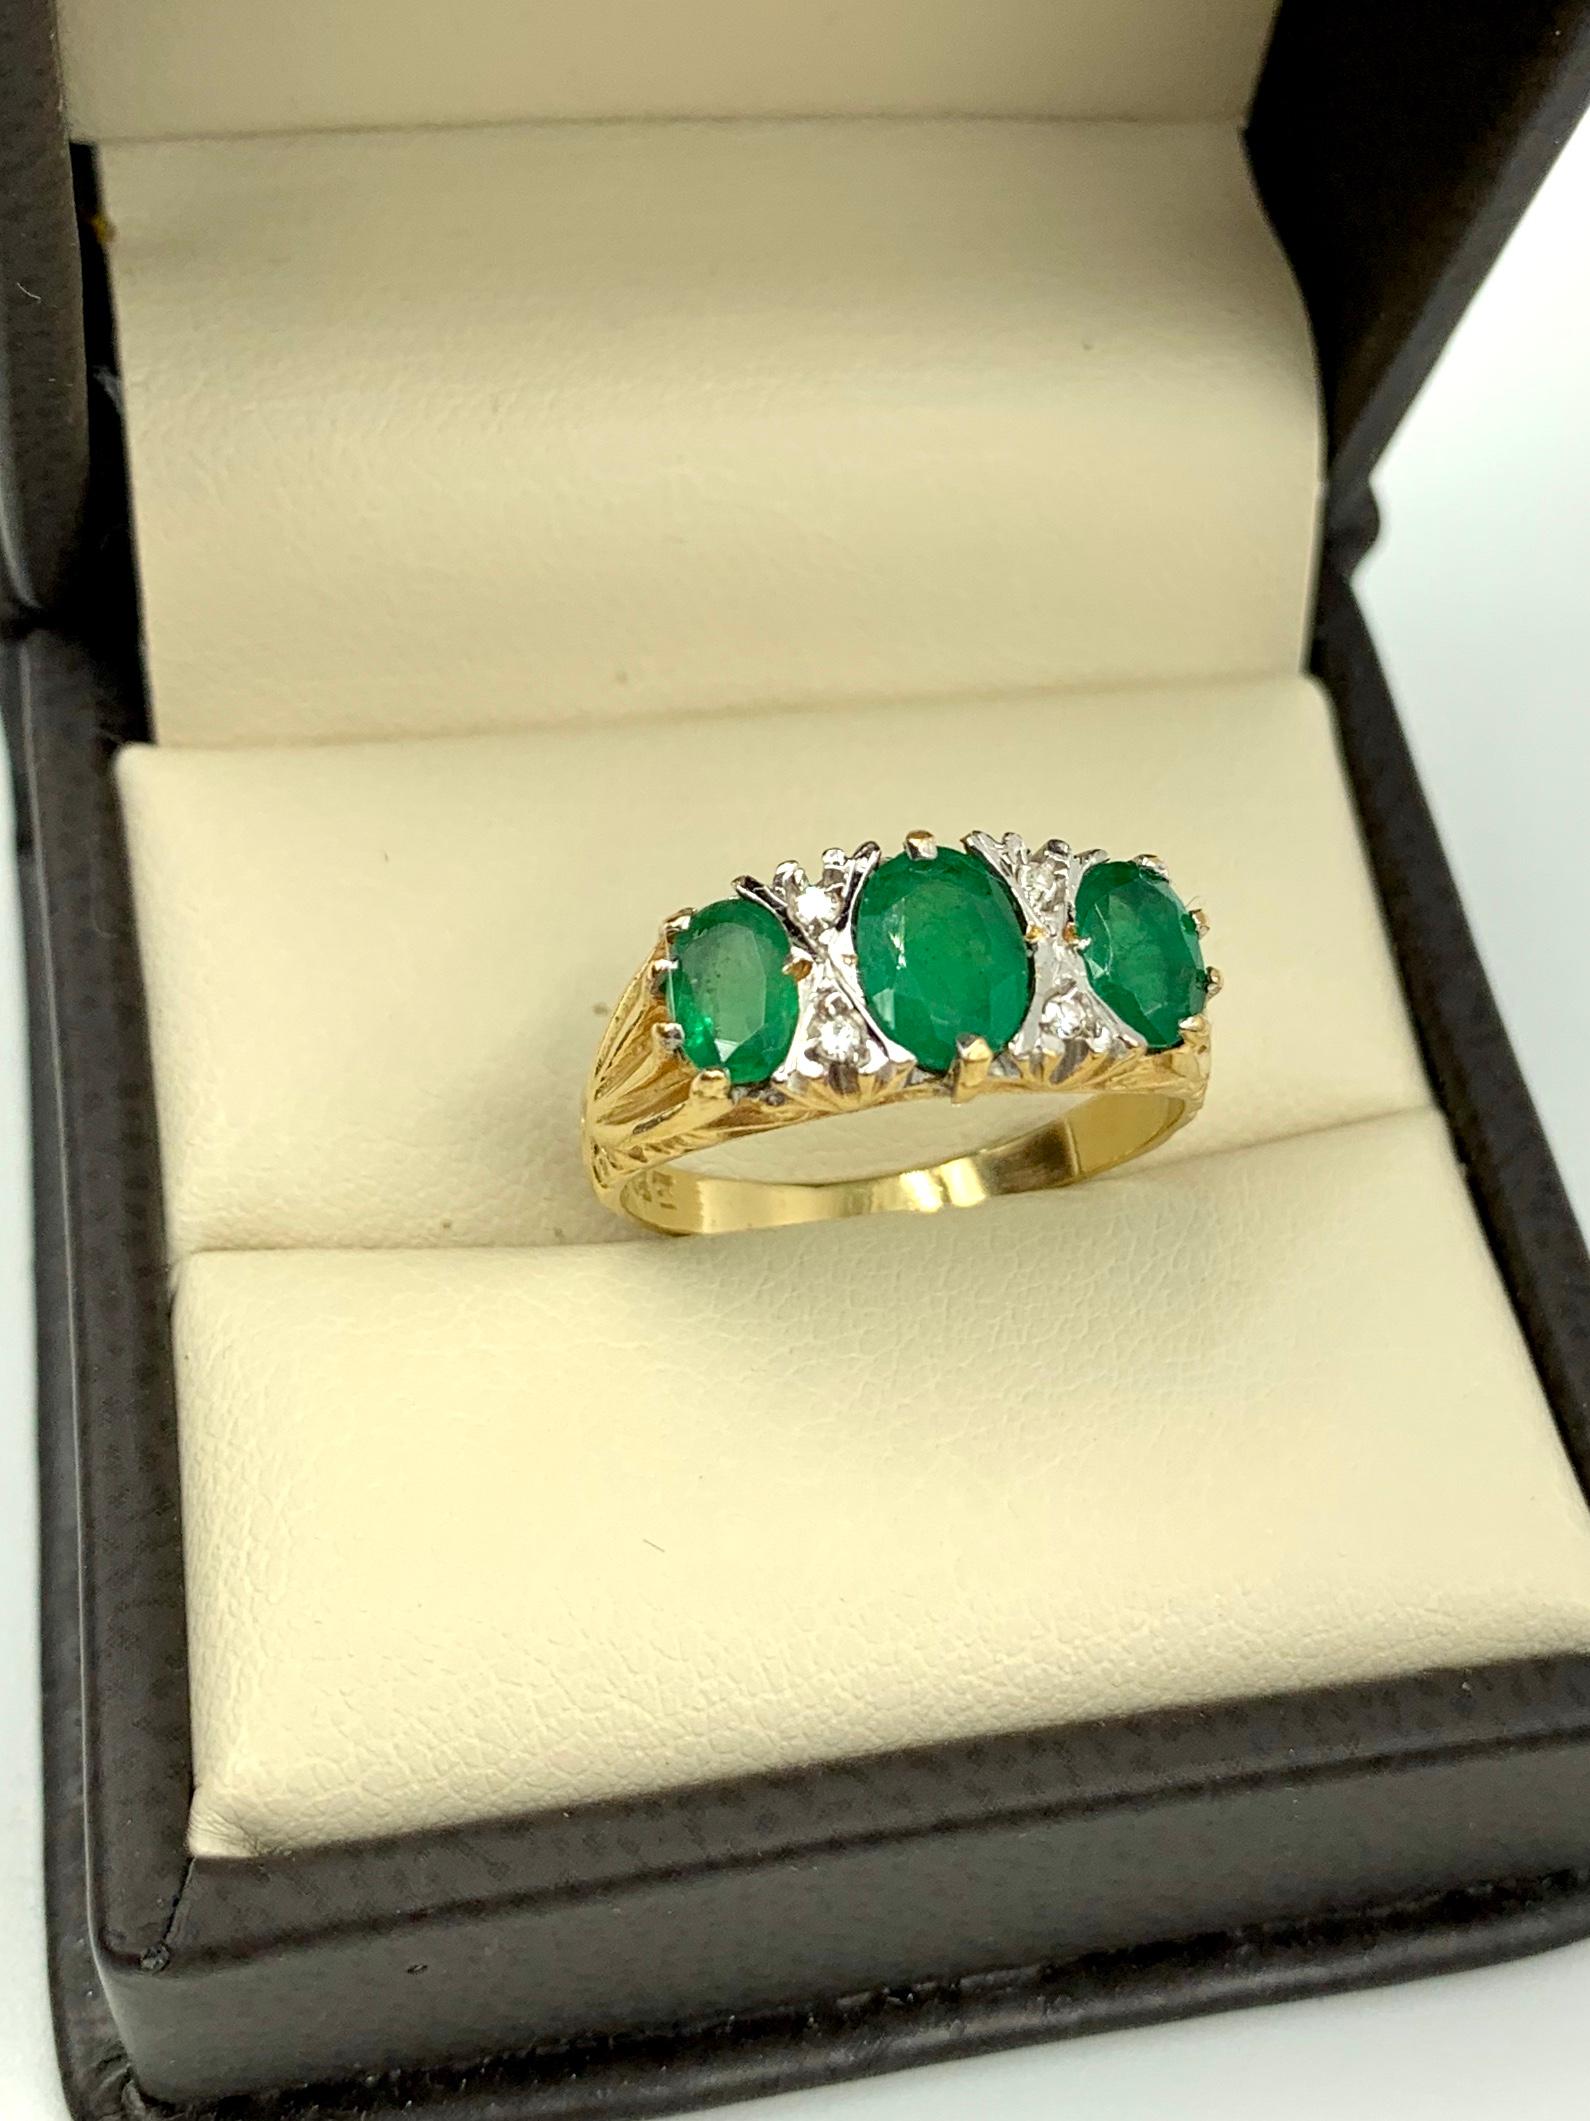 
Zentraler Smaragd ca. 1 Karat, die beiden flankierenden Smaragde jeweils 0,5 Karat mit vier Diamanten, die den zentralen Stein in einer X-Formation umgeben, das Ganze bildet OXOXO. Hübsche goldene Schnörkel oben und unten an der